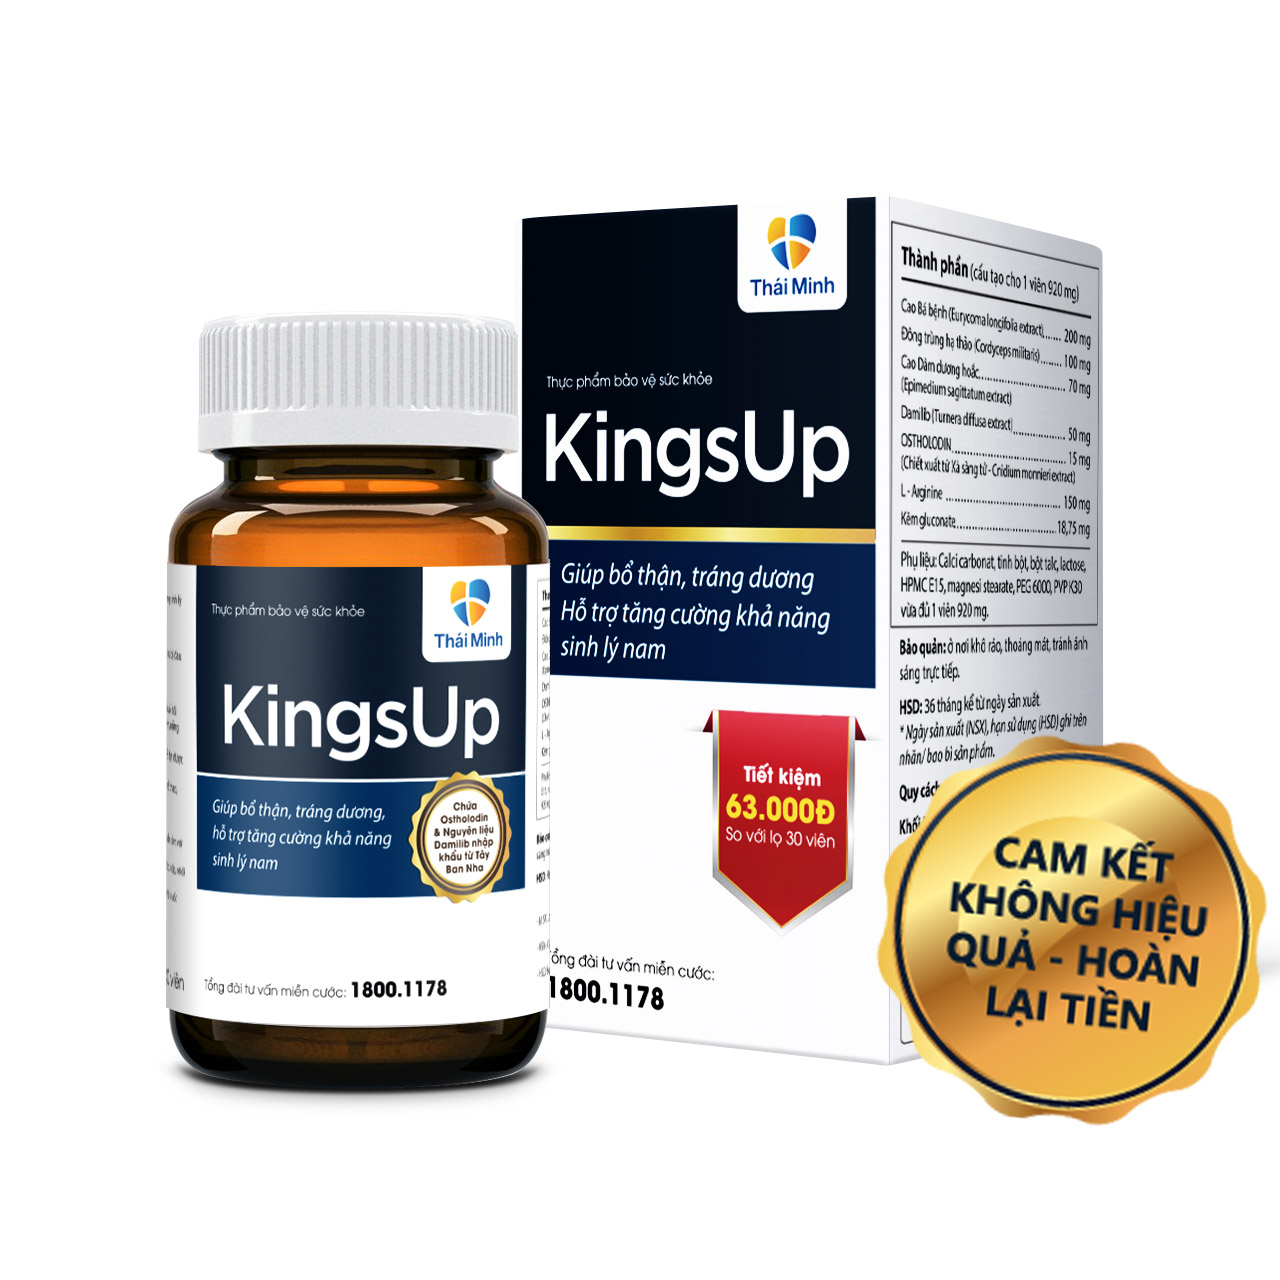 Viên uống tăng cường sinh lý nam KingsUp - An toàn và hiệu quả